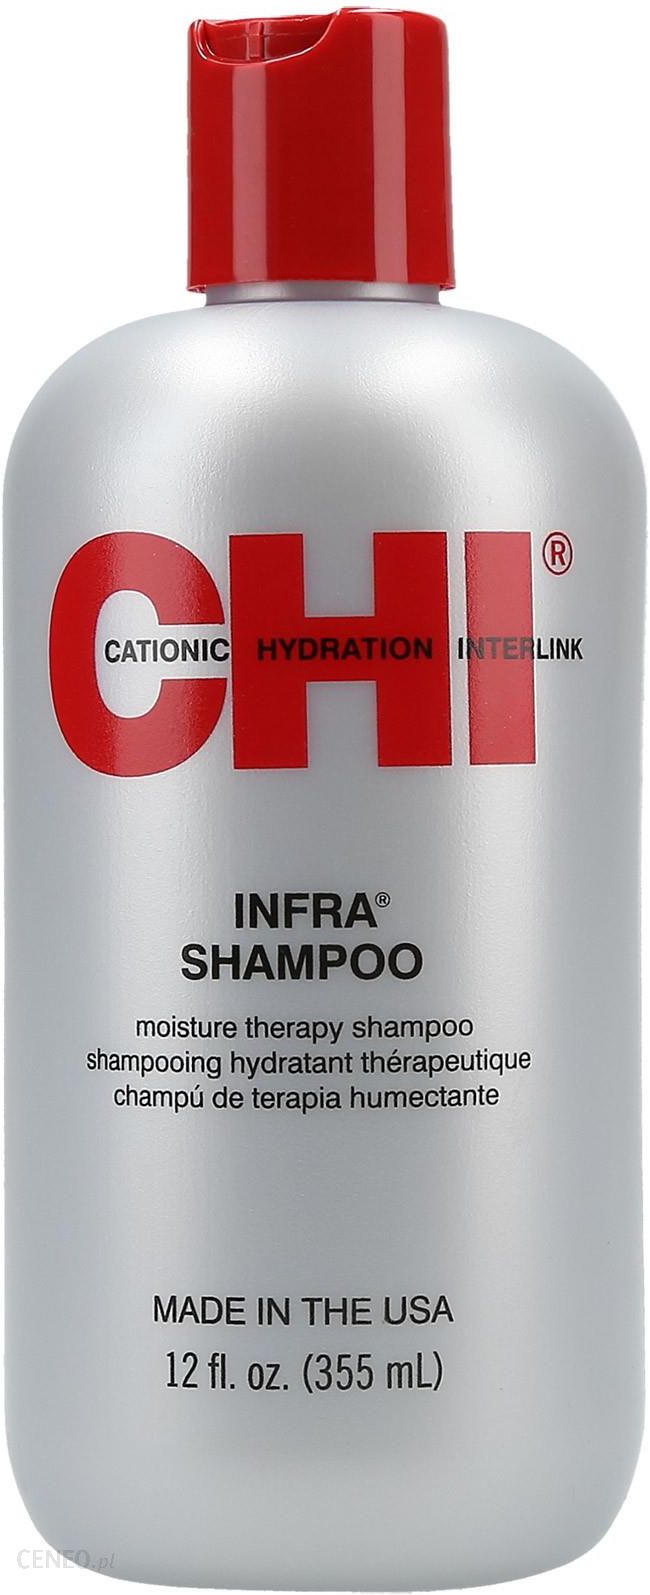 chi szampon wizaz